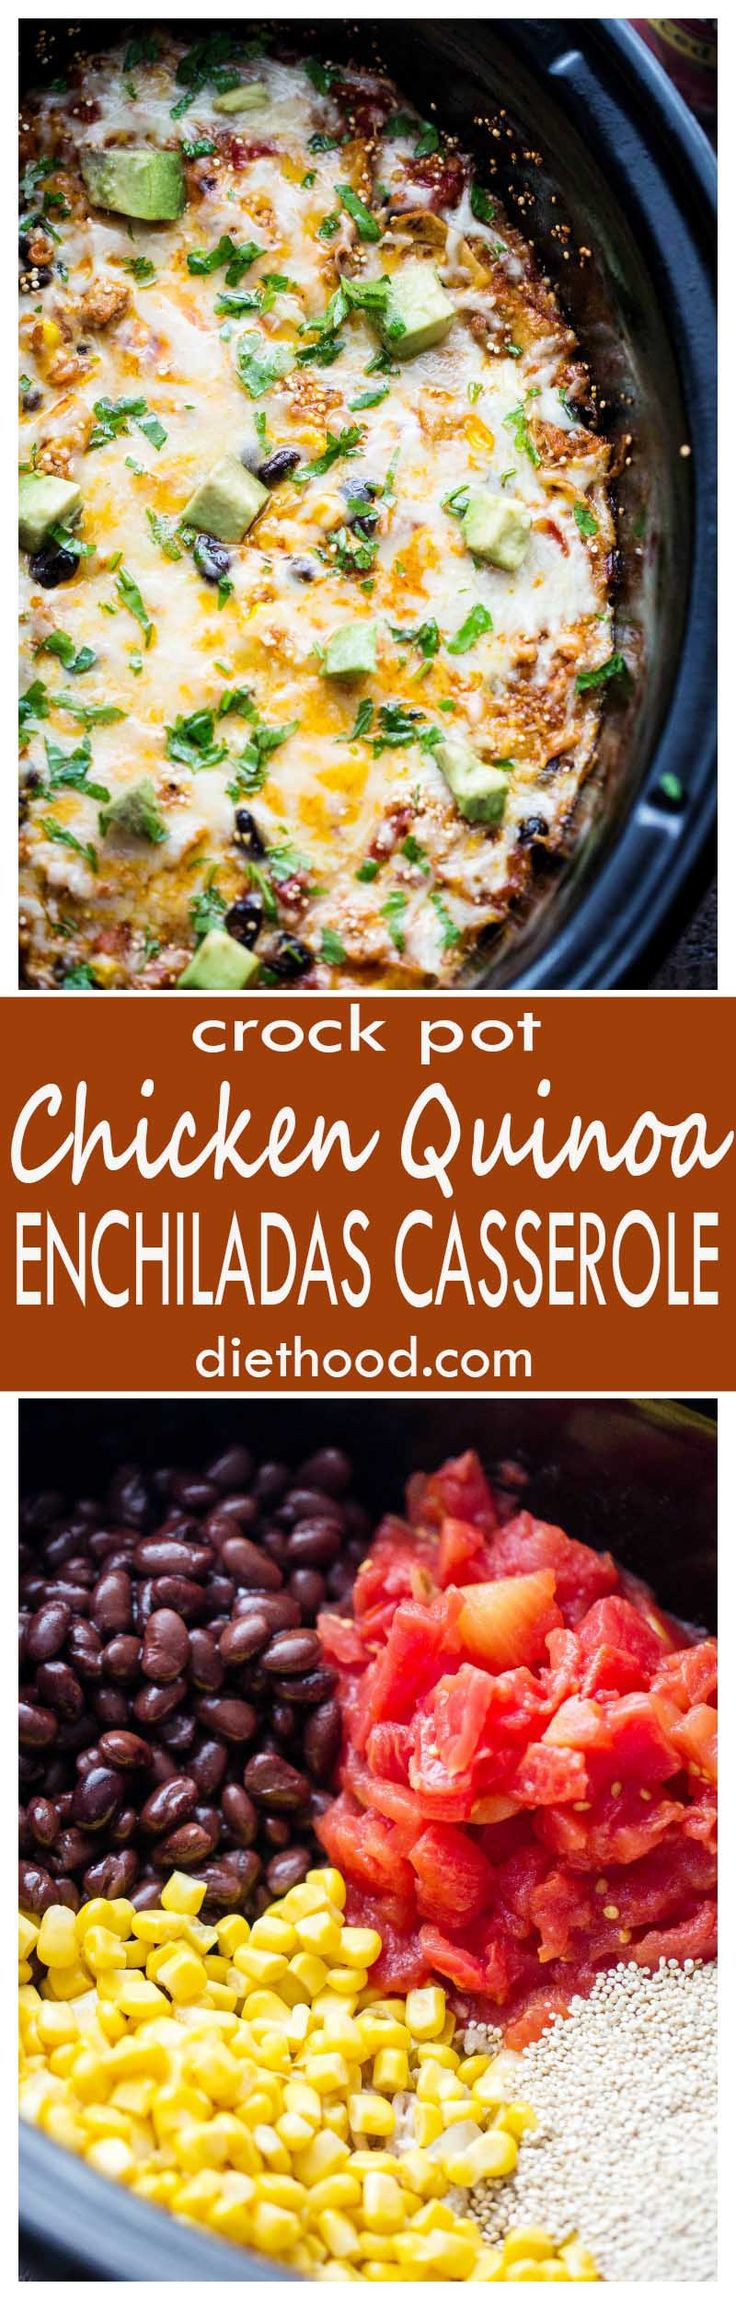 Crockpot Chicken Enchiladas Healthy
 25 best ideas about Quinoa enchilada casserole on